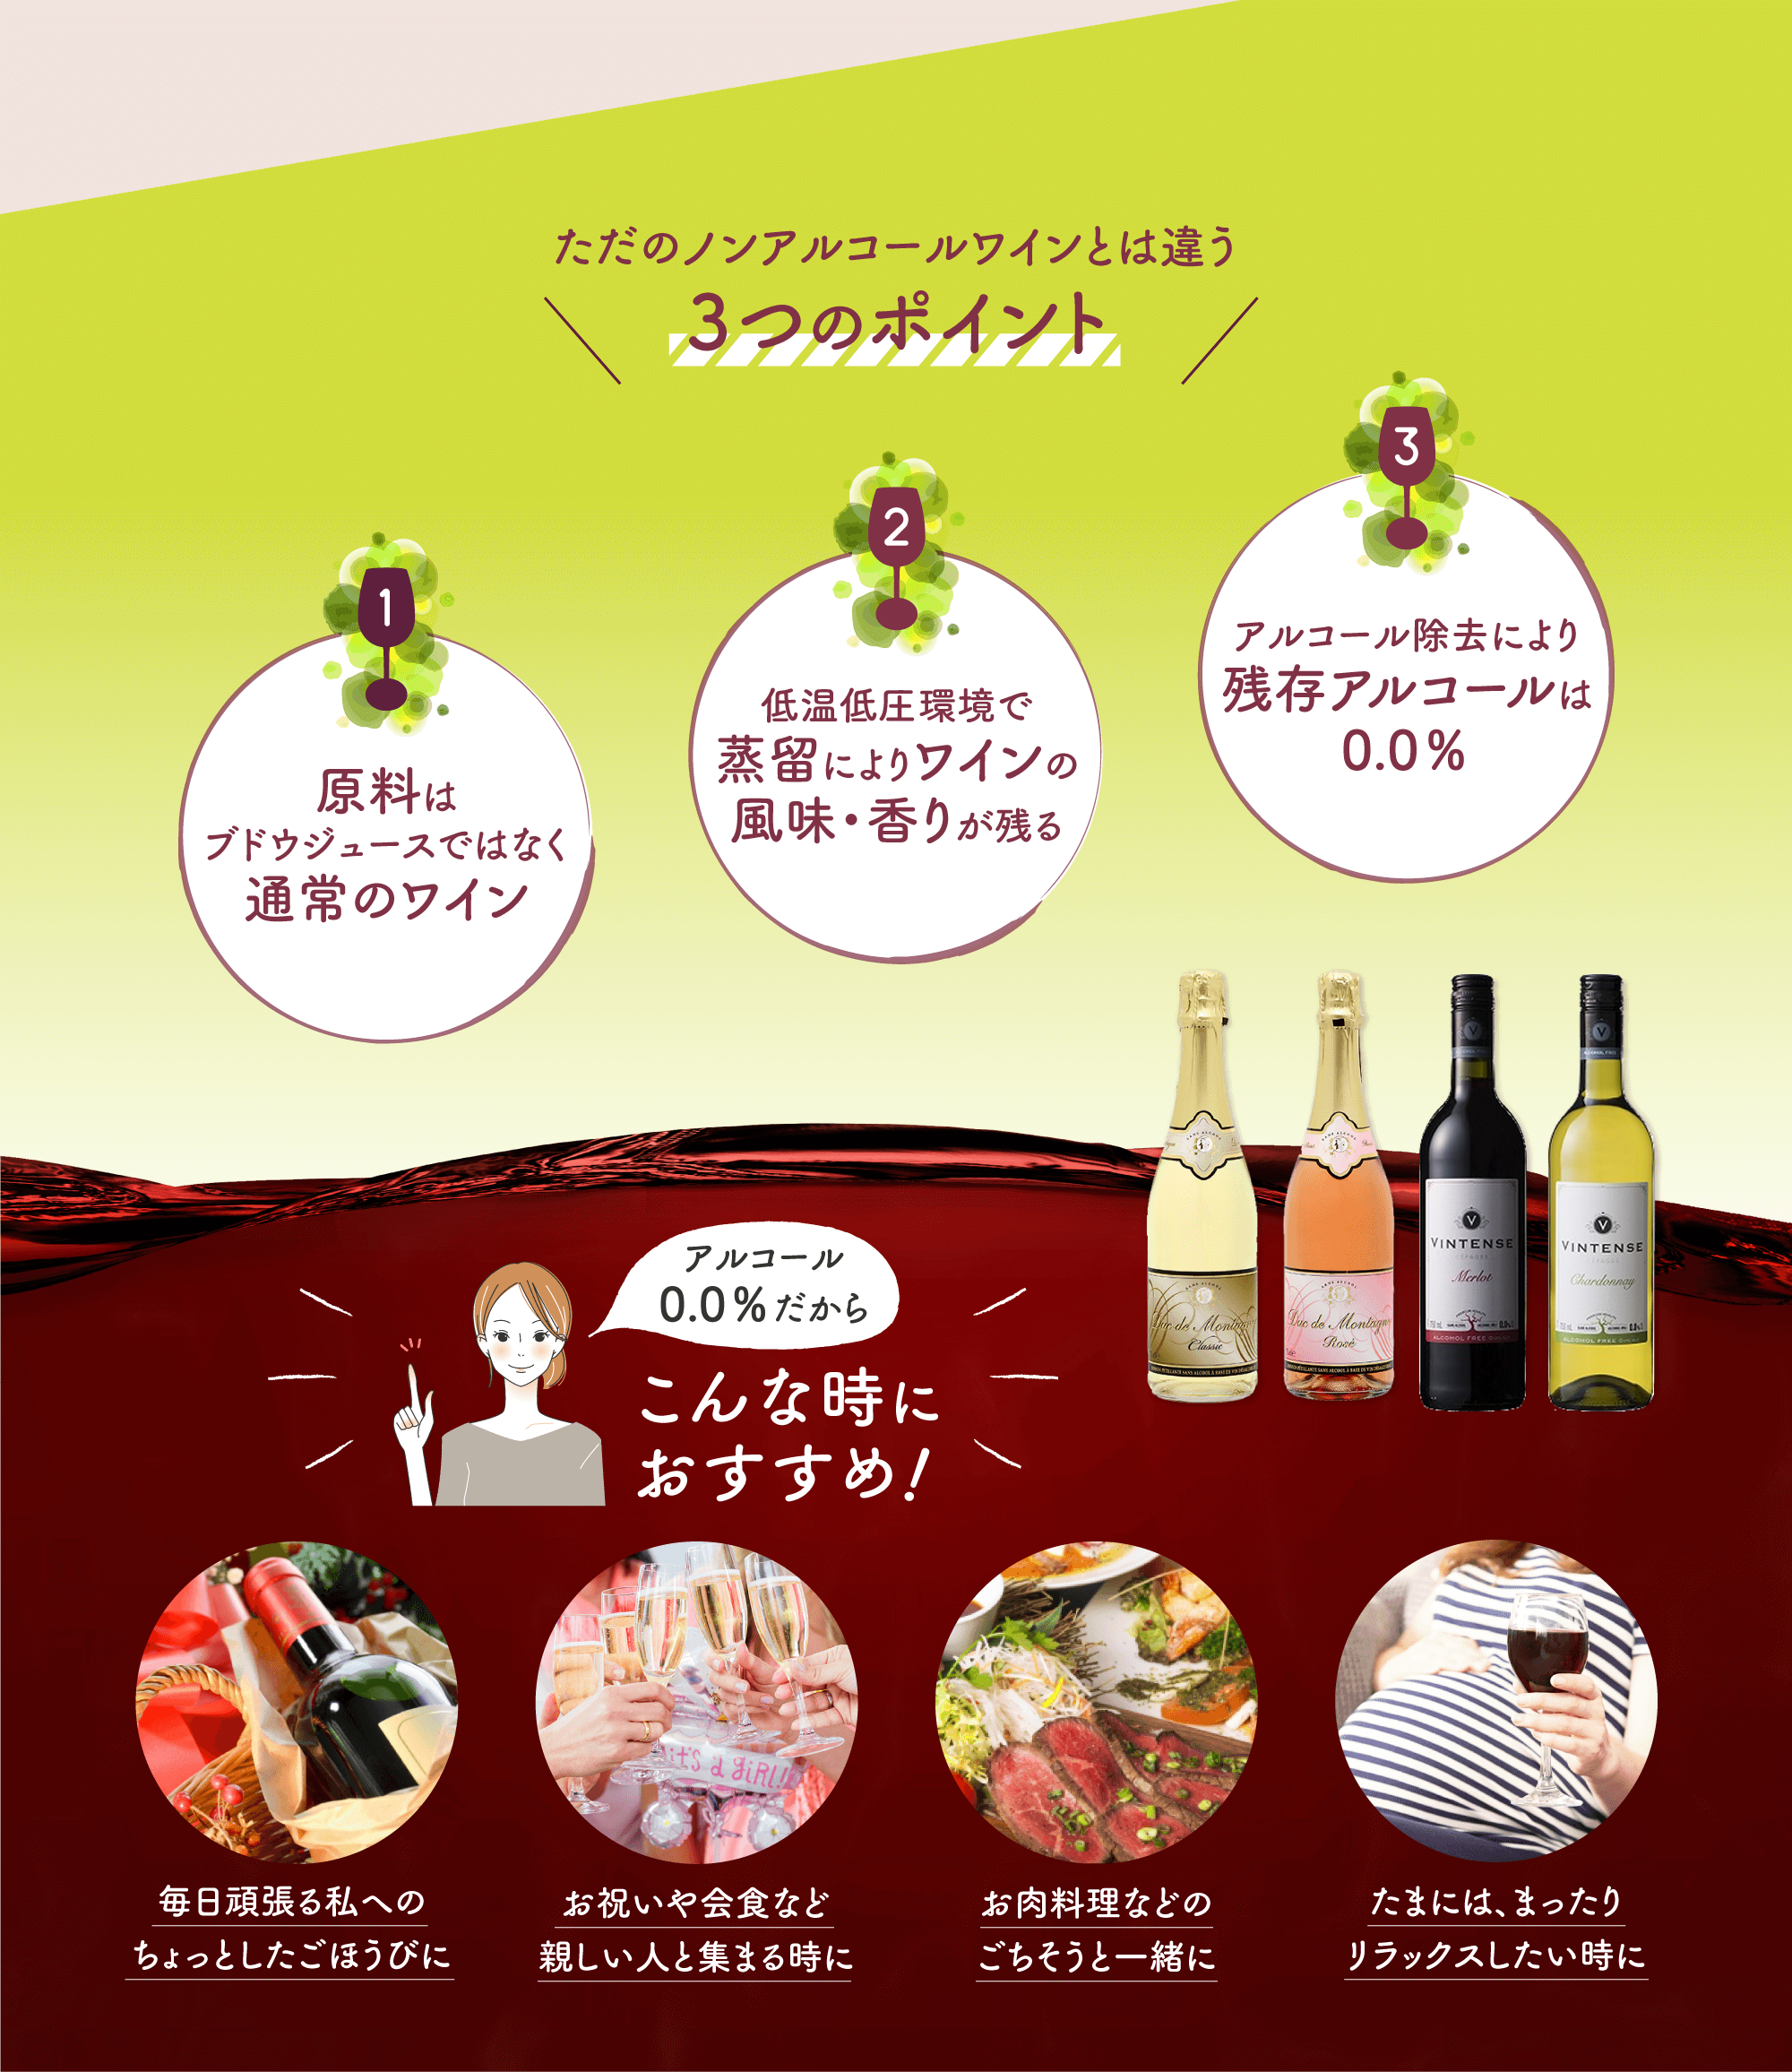 ただのノンアルコールワインとは違う３つのポイント　原料はブドウジュースではなく通常のワイン　低温低圧環境で蒸留によりワインの風味・香りが残る　アルコール除去により残存アルコールは0.0％